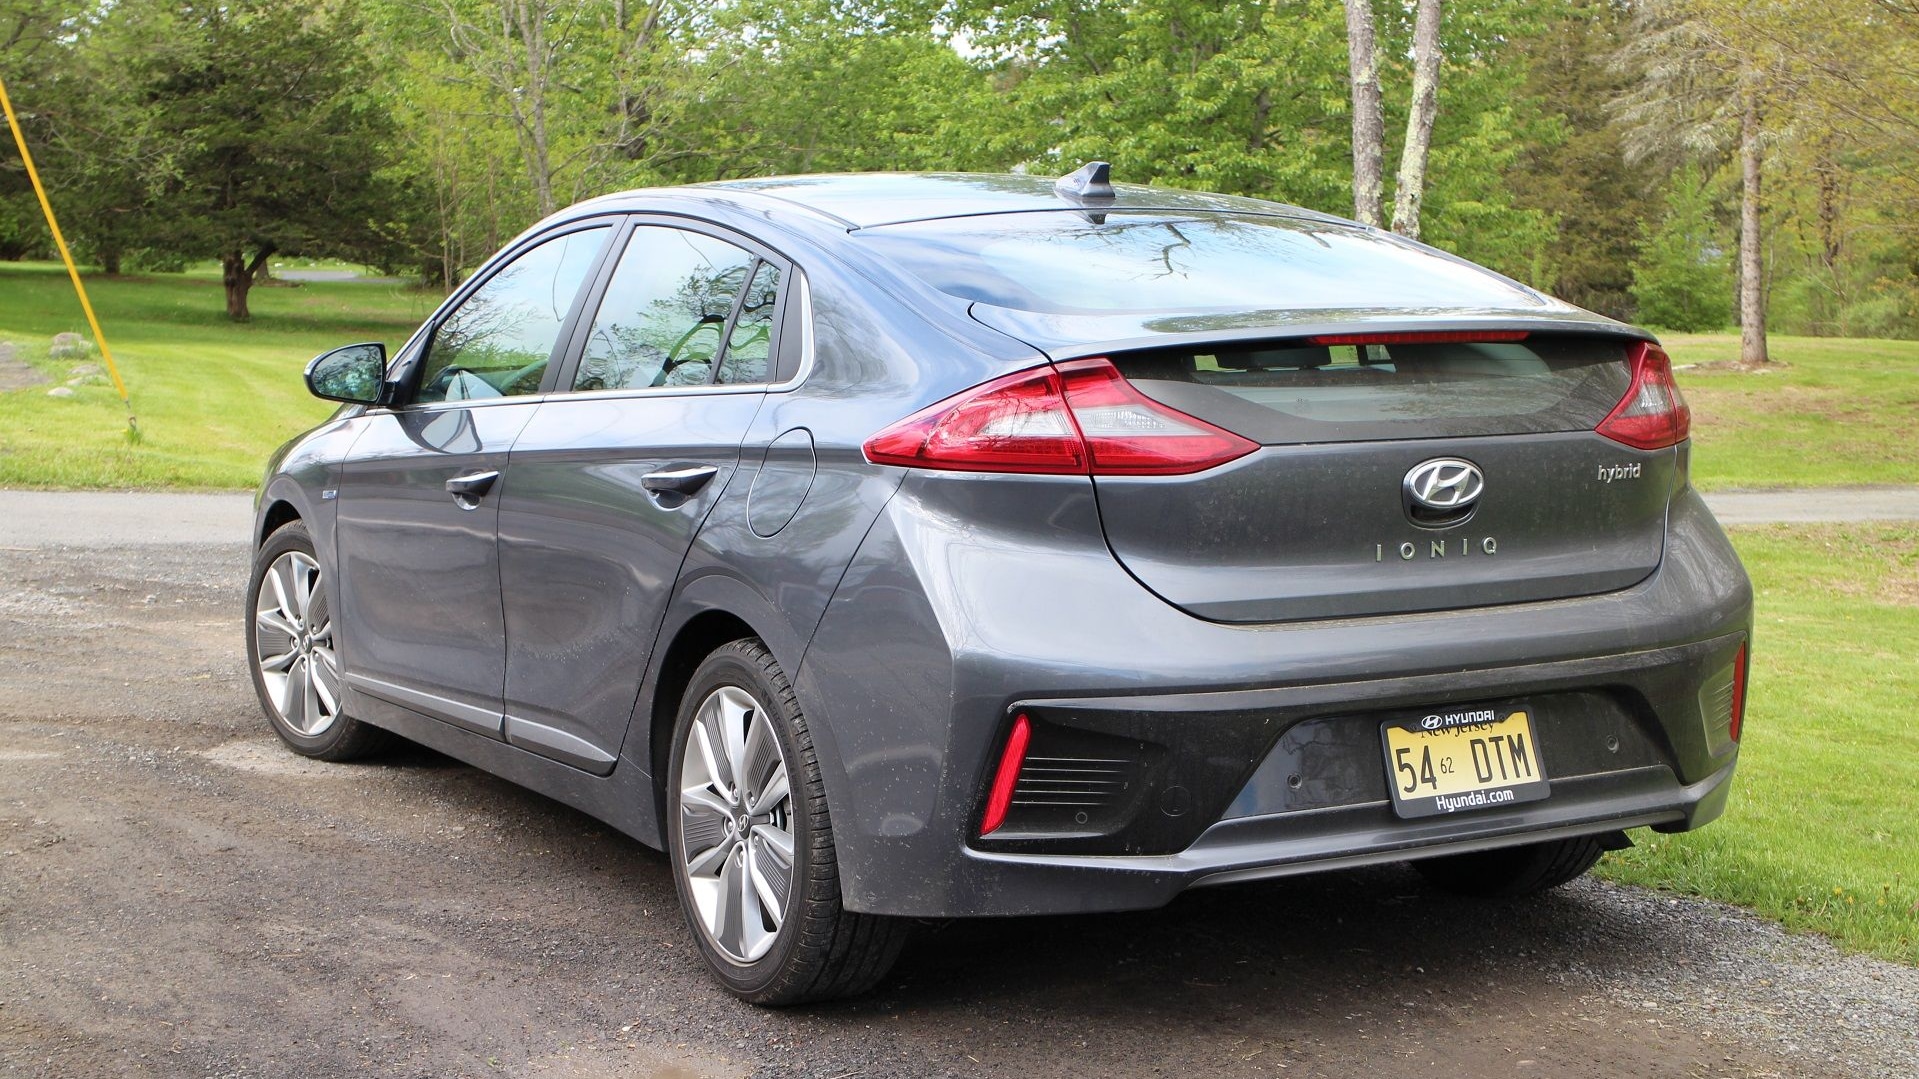 2017 Hyundai Ioniq Hybrid Limited, Catskill Mountains, NY, May 2017